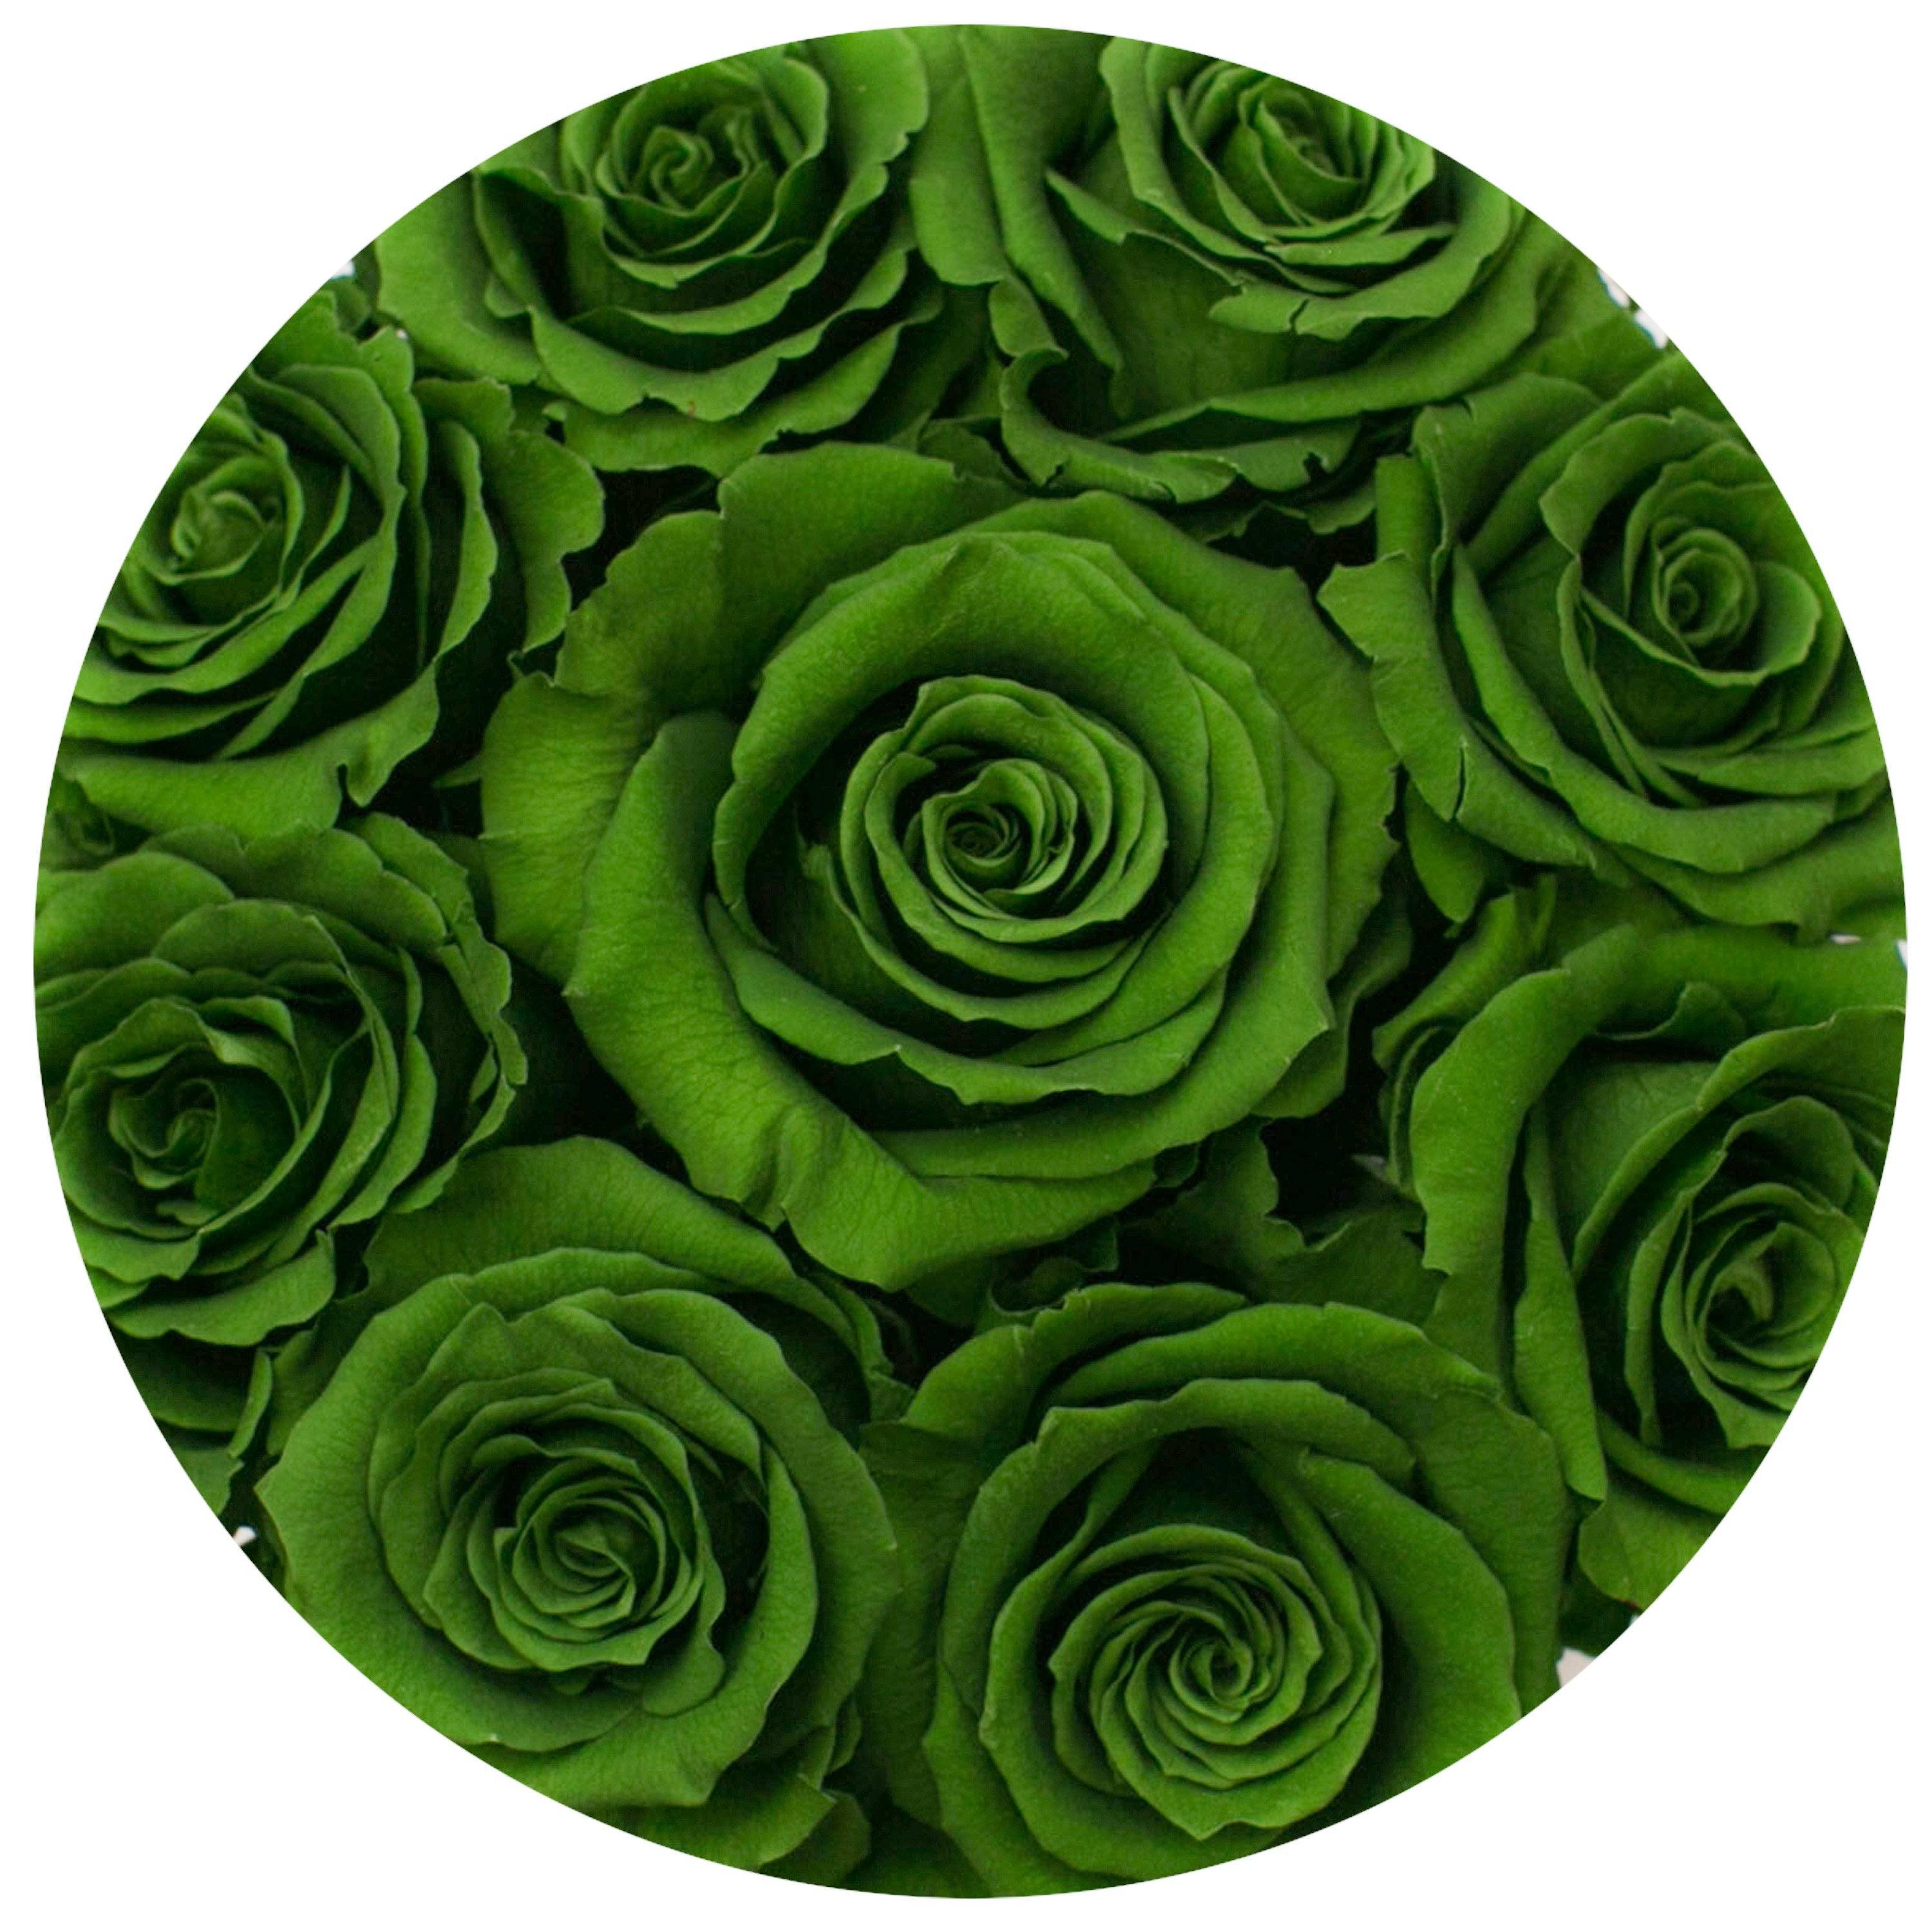 the million Basic+ box - white - emerald-green ETERNITY+ roses green eternity roses - the million roses